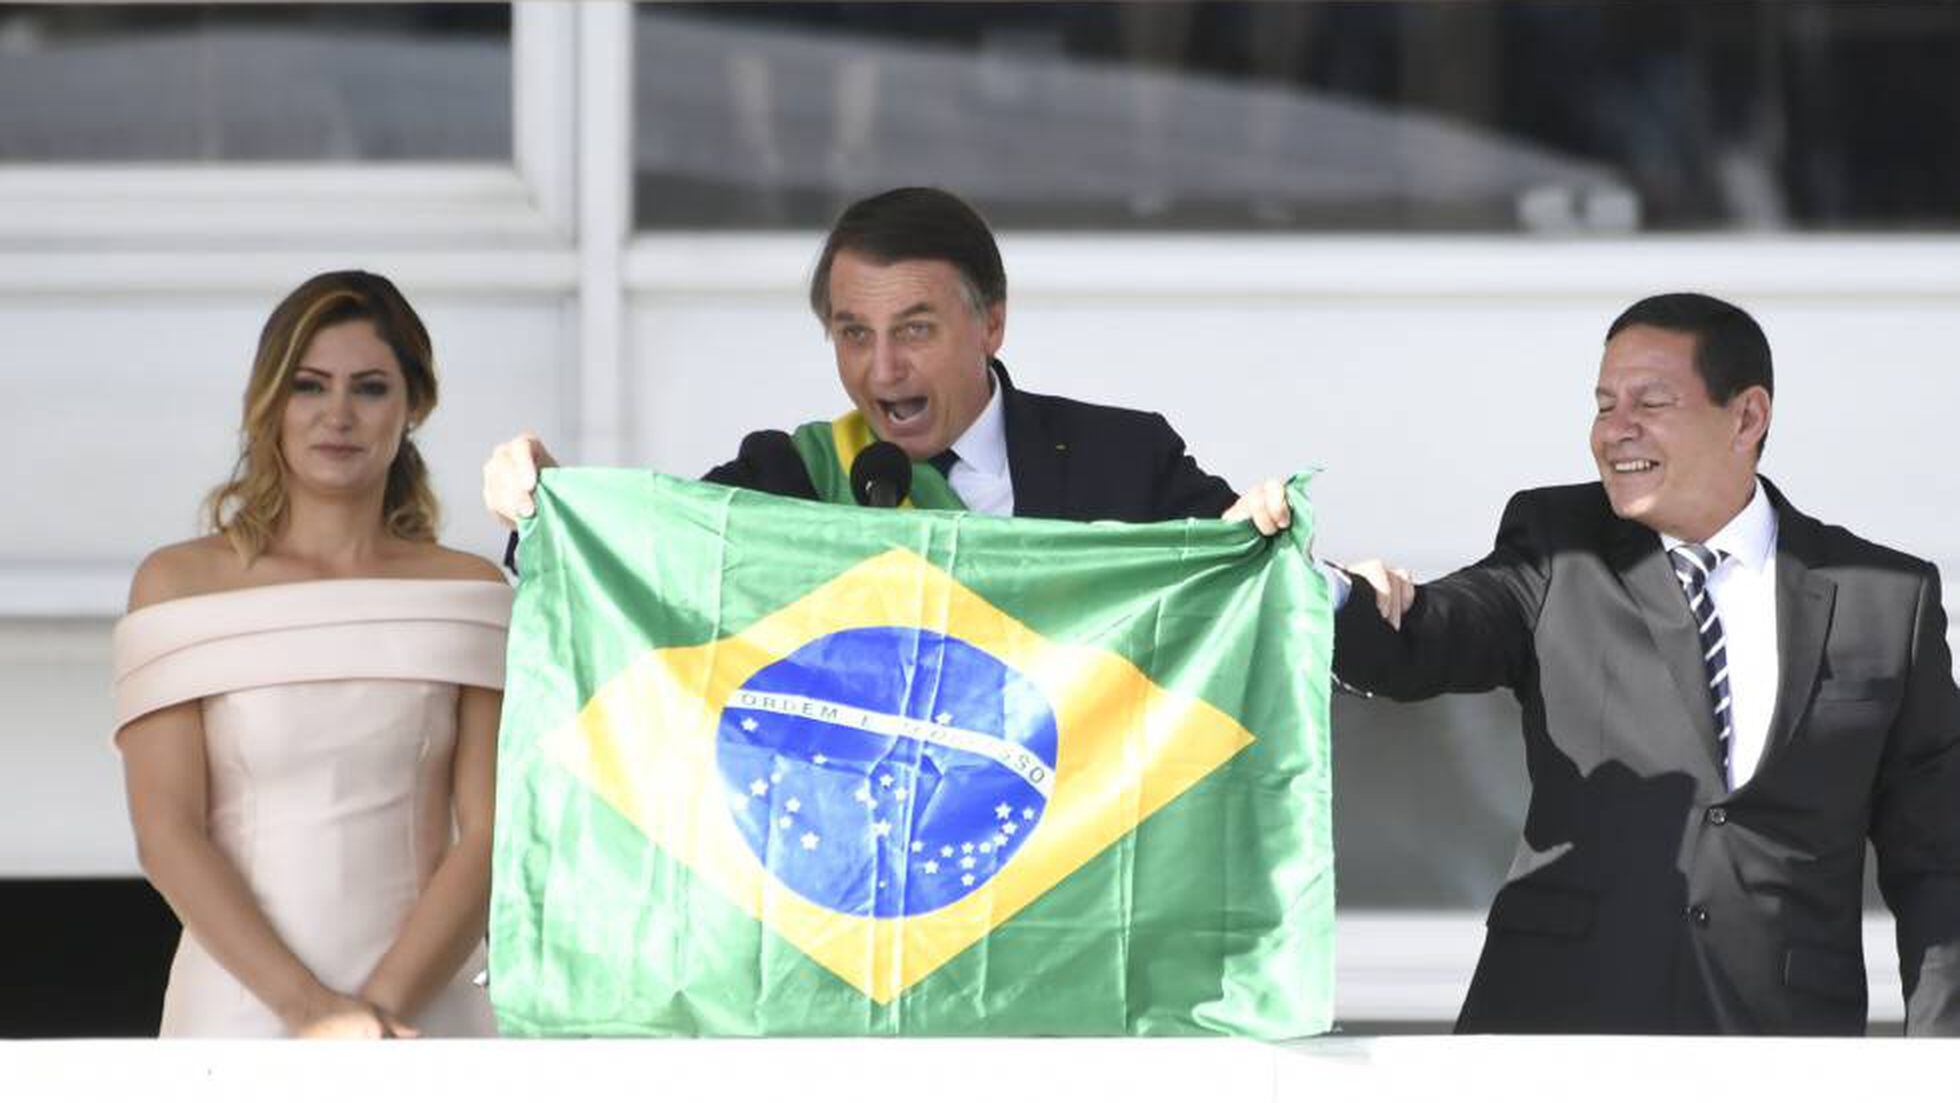 Jair Bolsonaro: O homem mediano assume o poder, Opinião